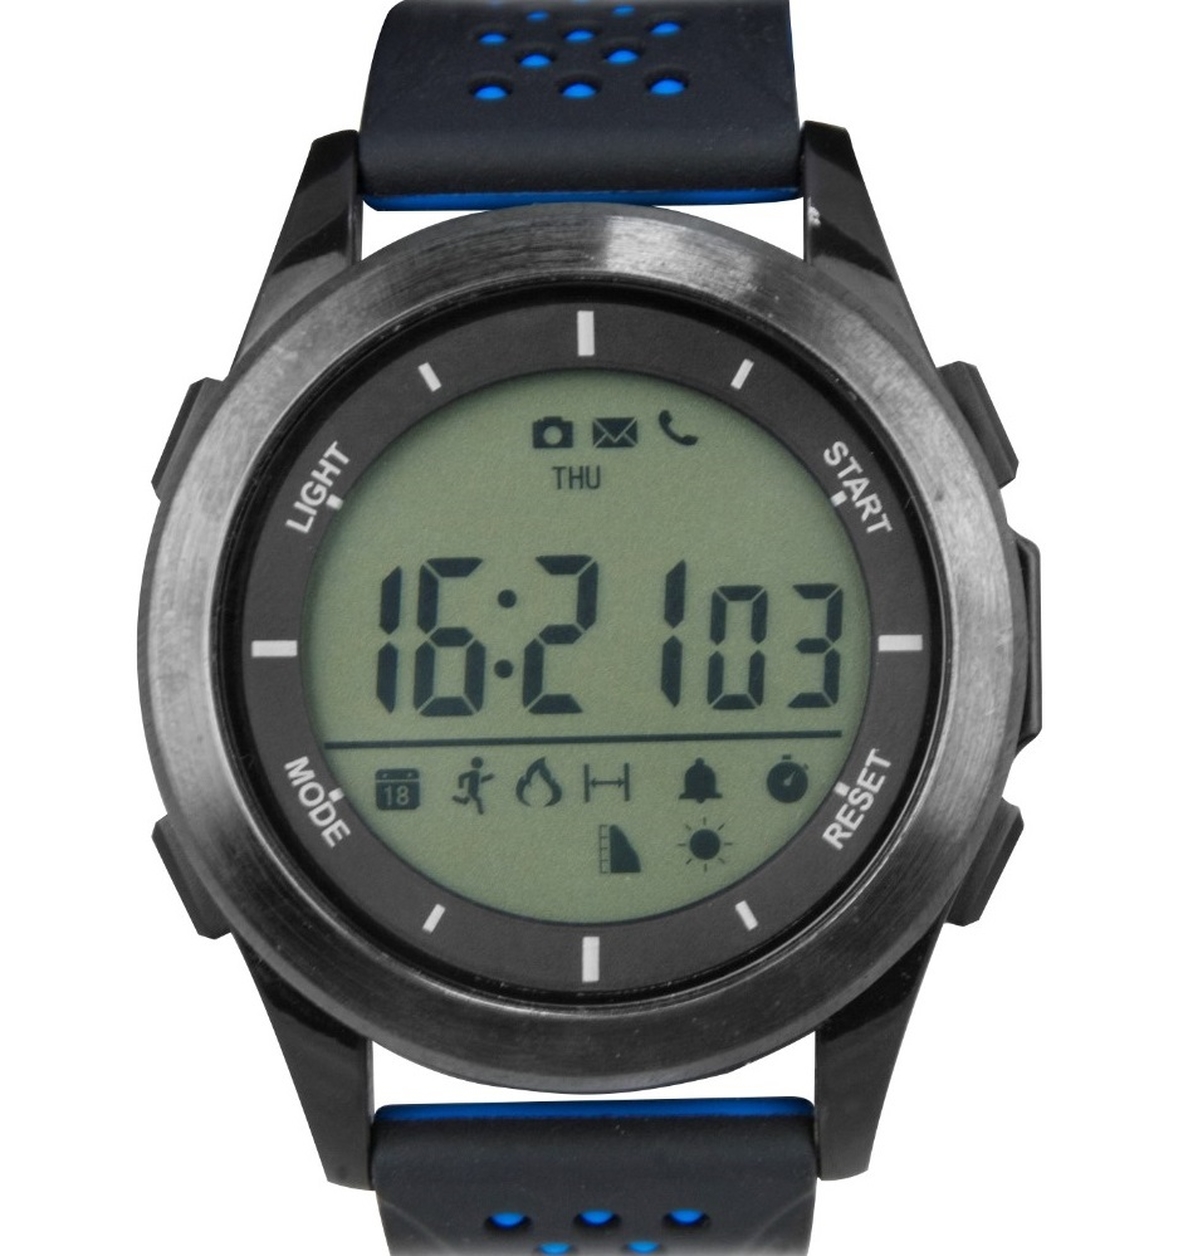 Ksix Fitness Explorer 2, un reloj deportivo para usuarios poco exigentes con un »software» mejorable